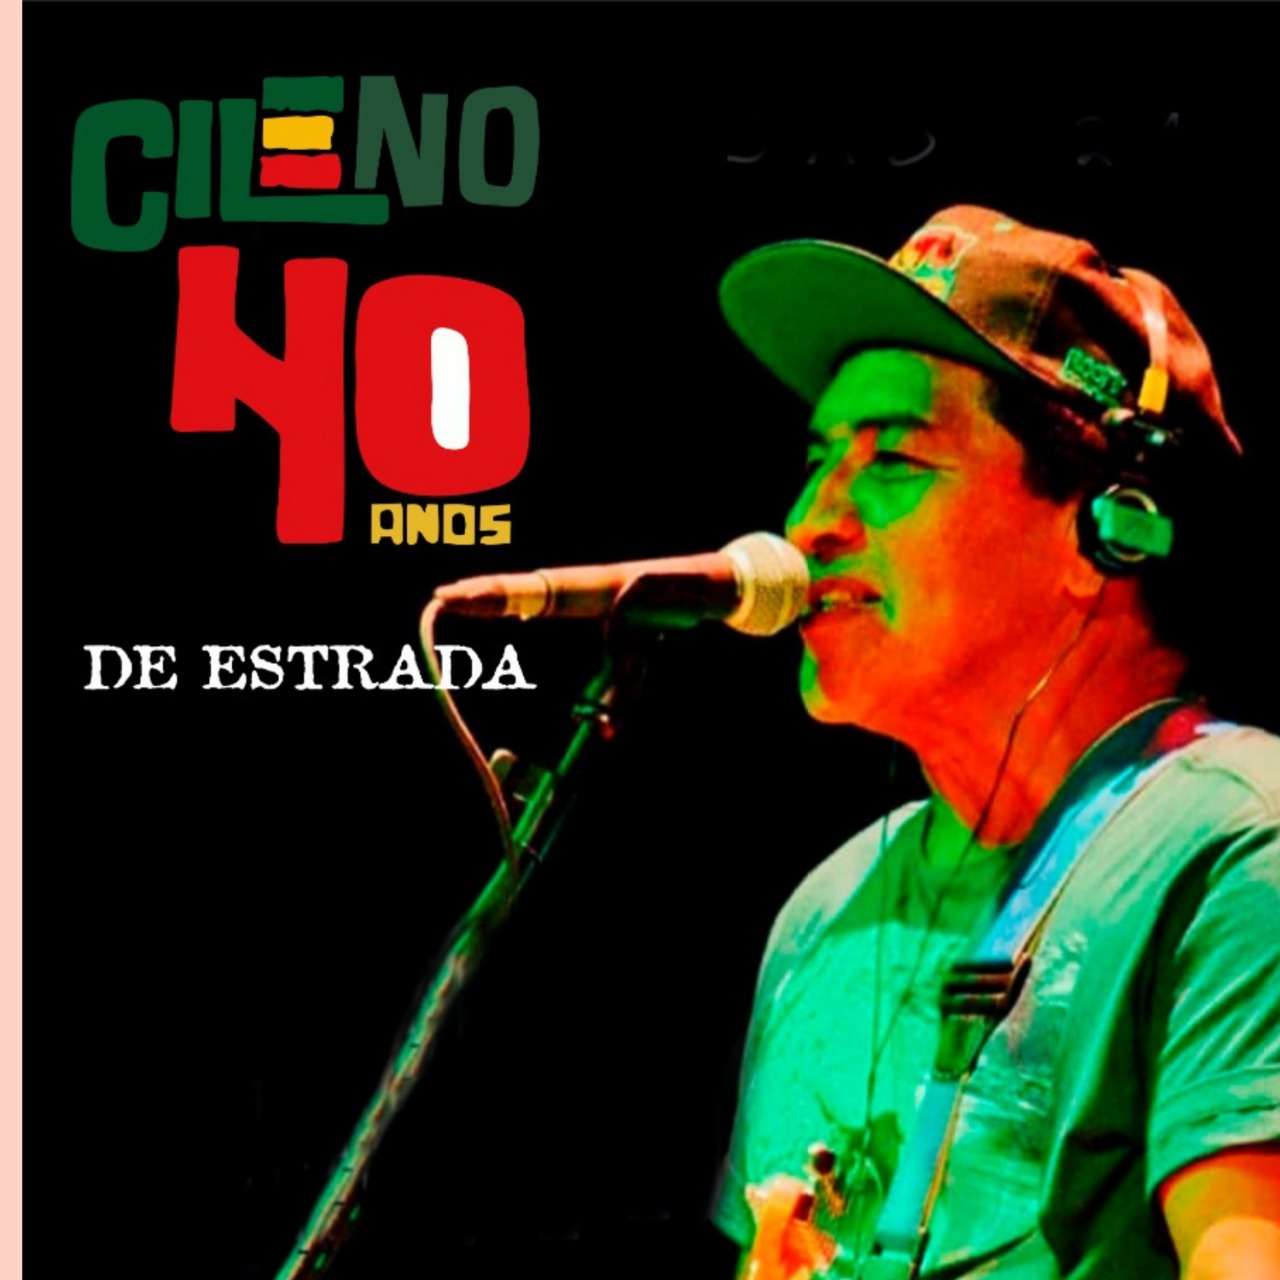 Cantor Cileno lança seu novo álbum nas plataformas digitais no próximo domingo